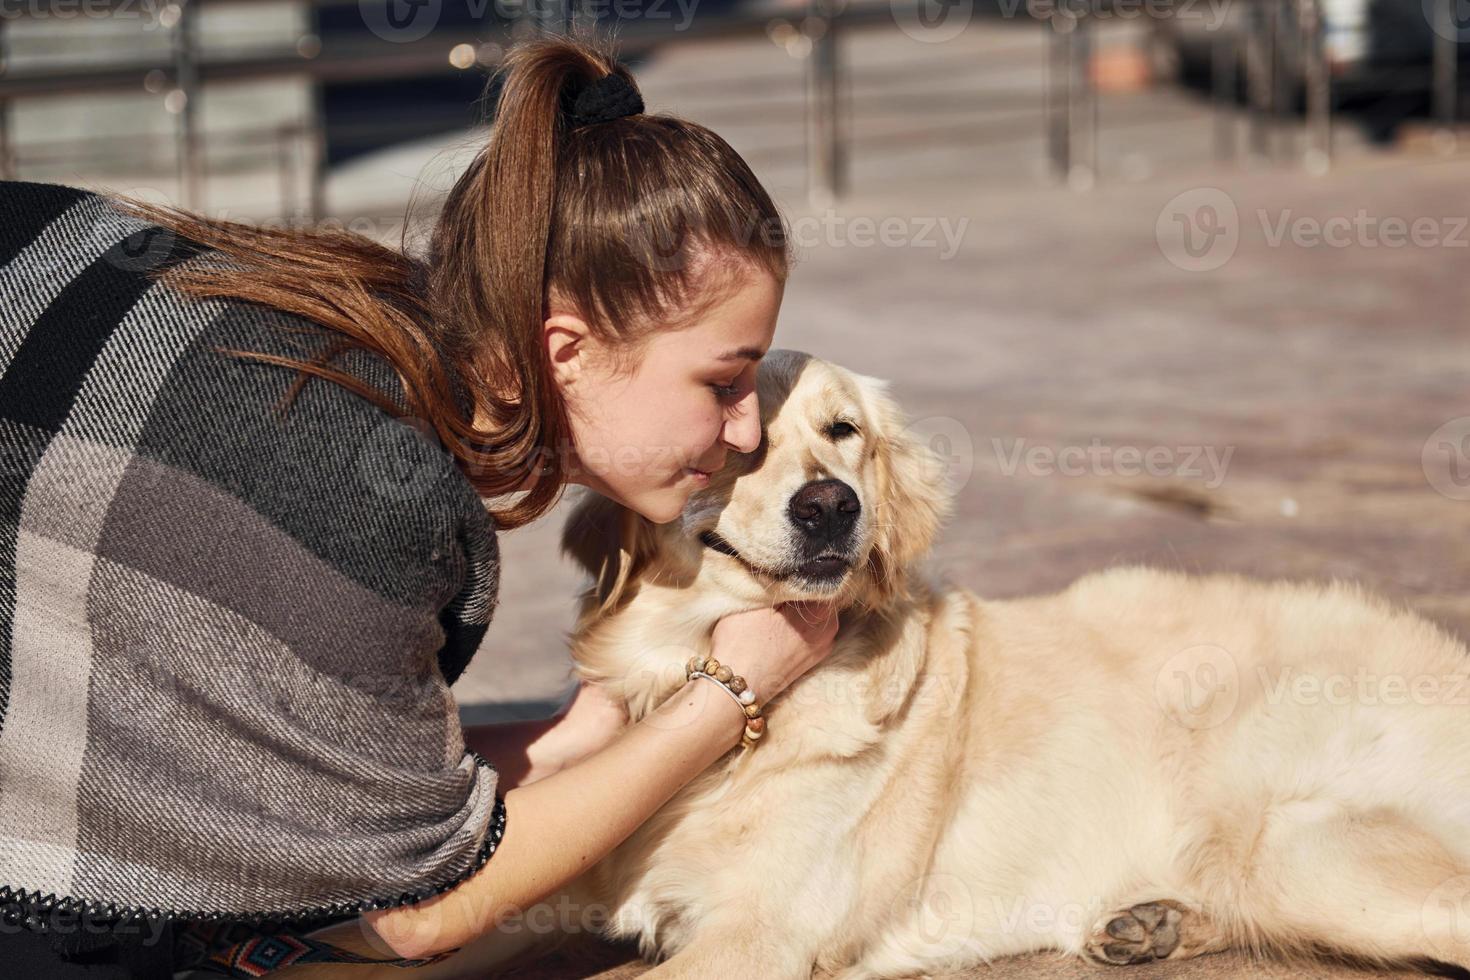 Junge positive Frau hat Spaß mit ihrem Hund, wenn sie im Freien spazieren geht foto